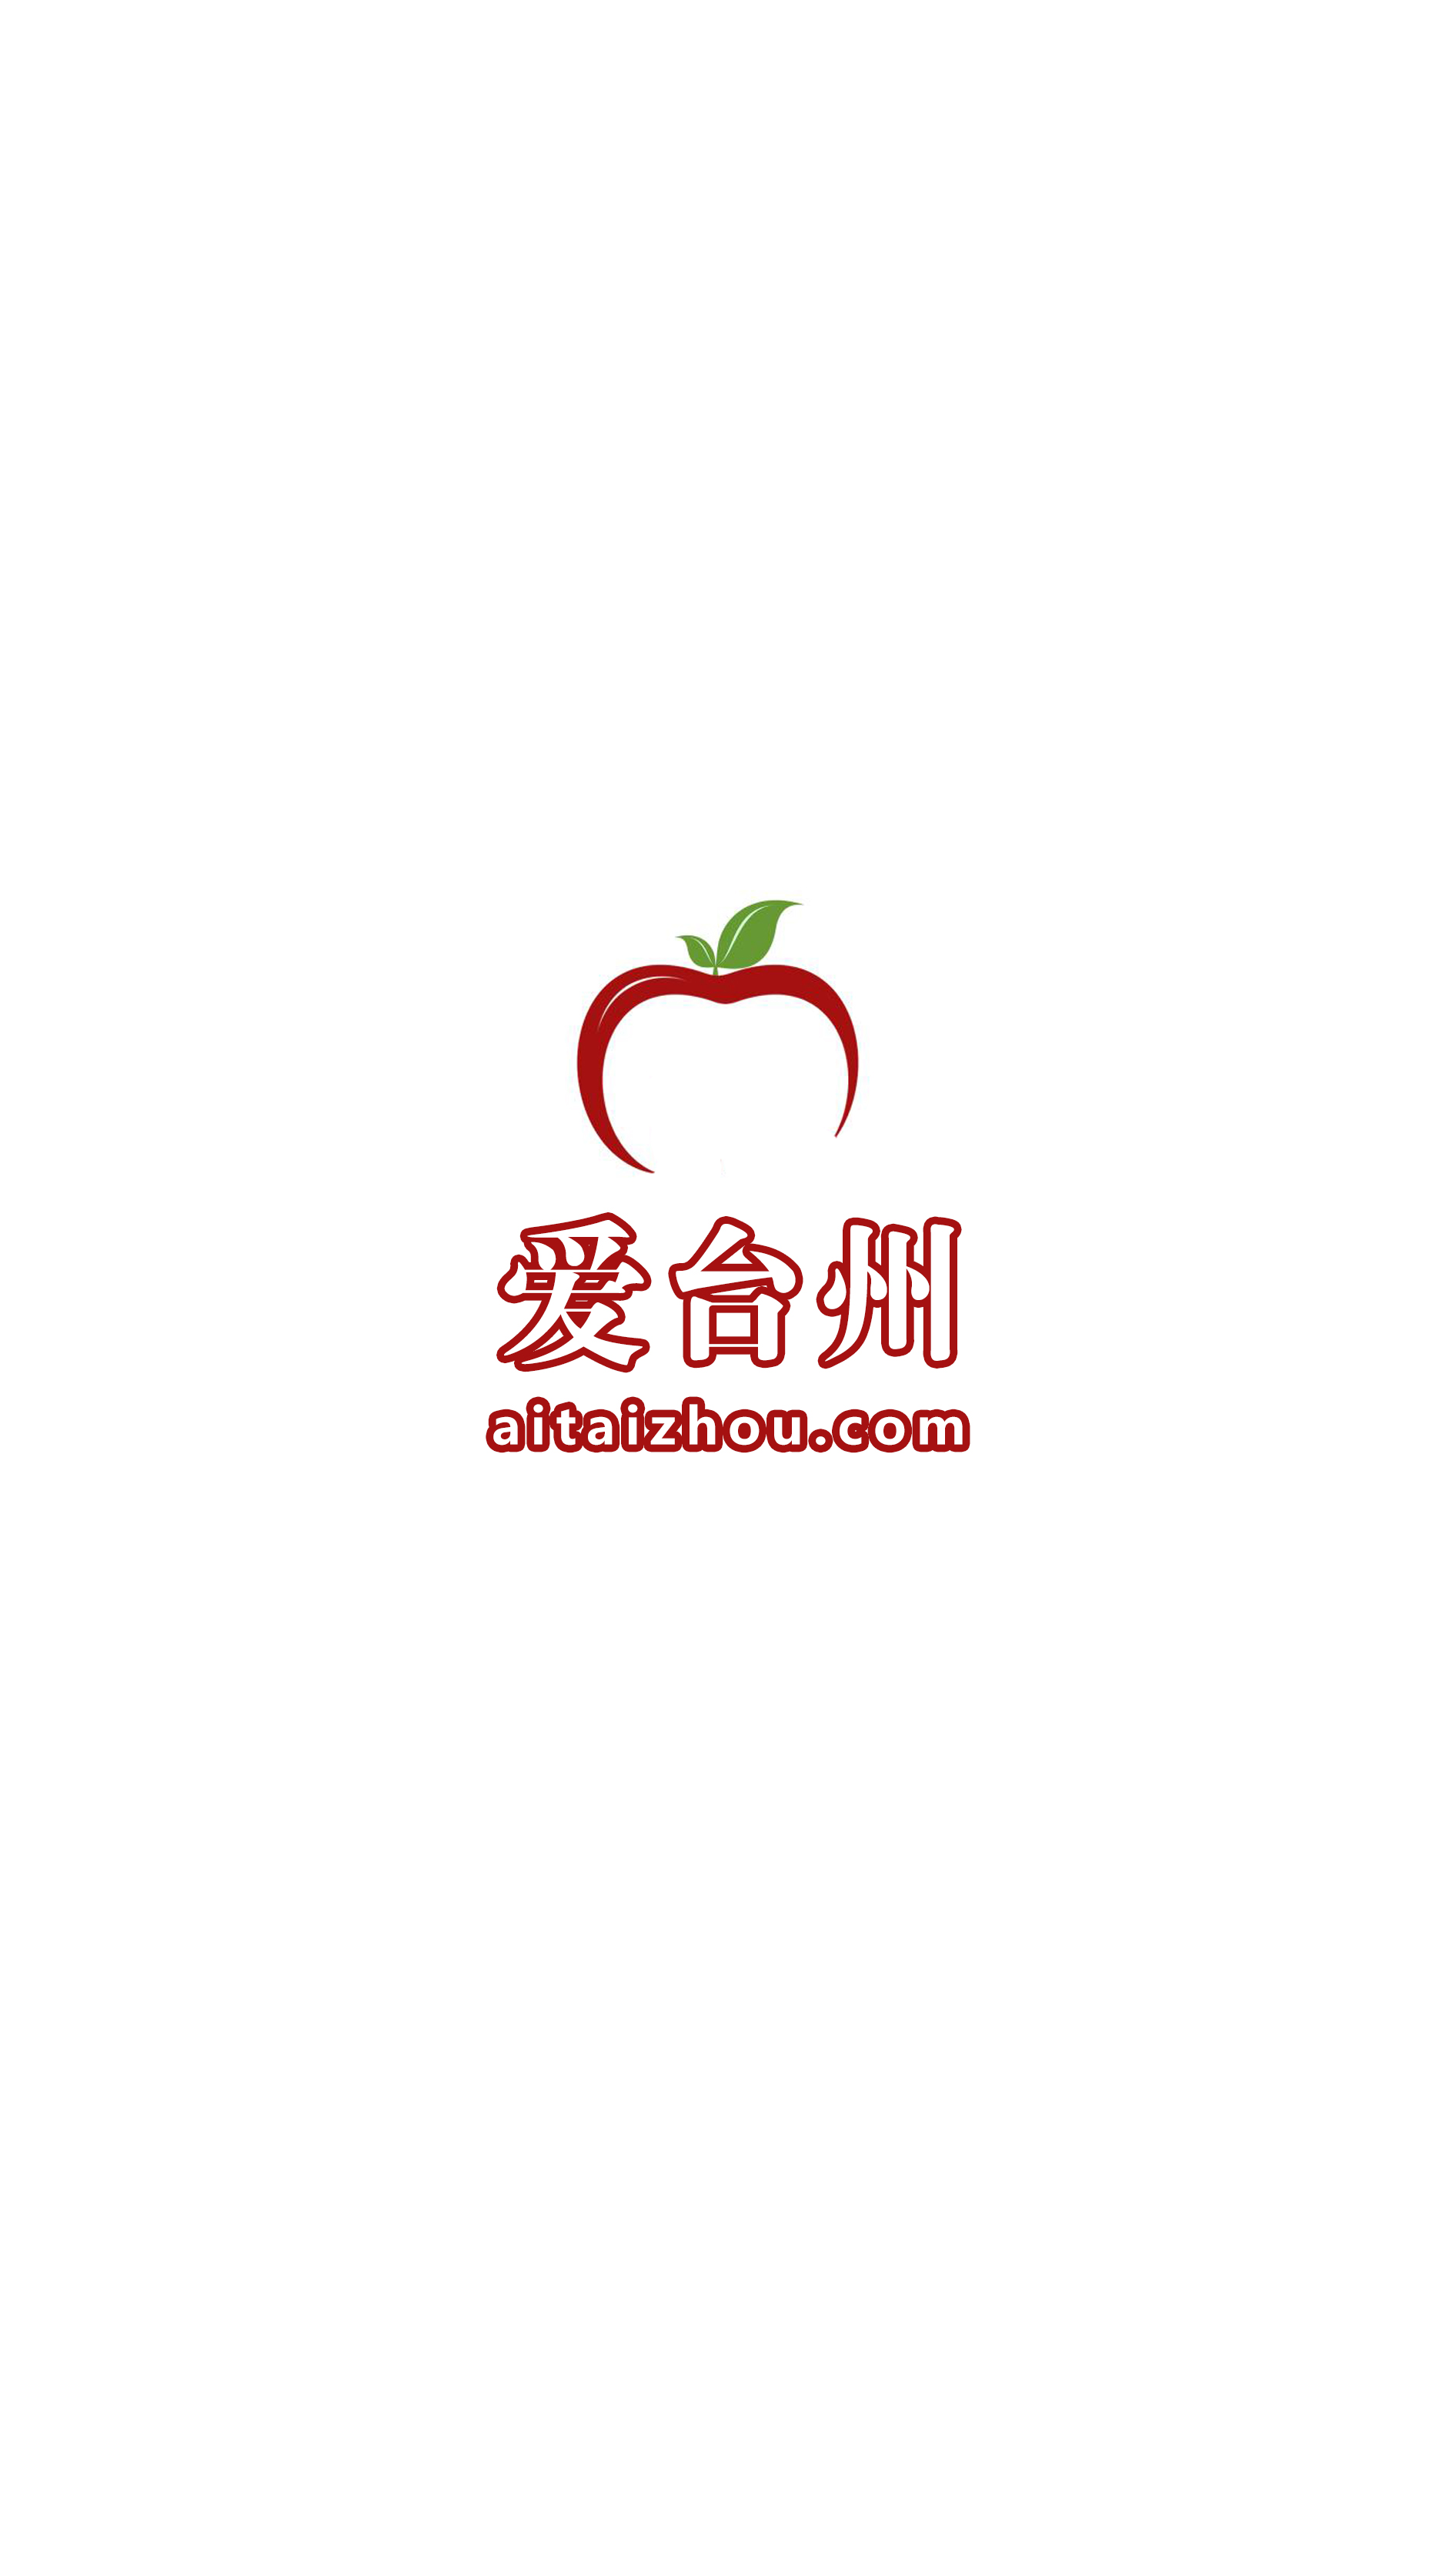 aitaizhou.com